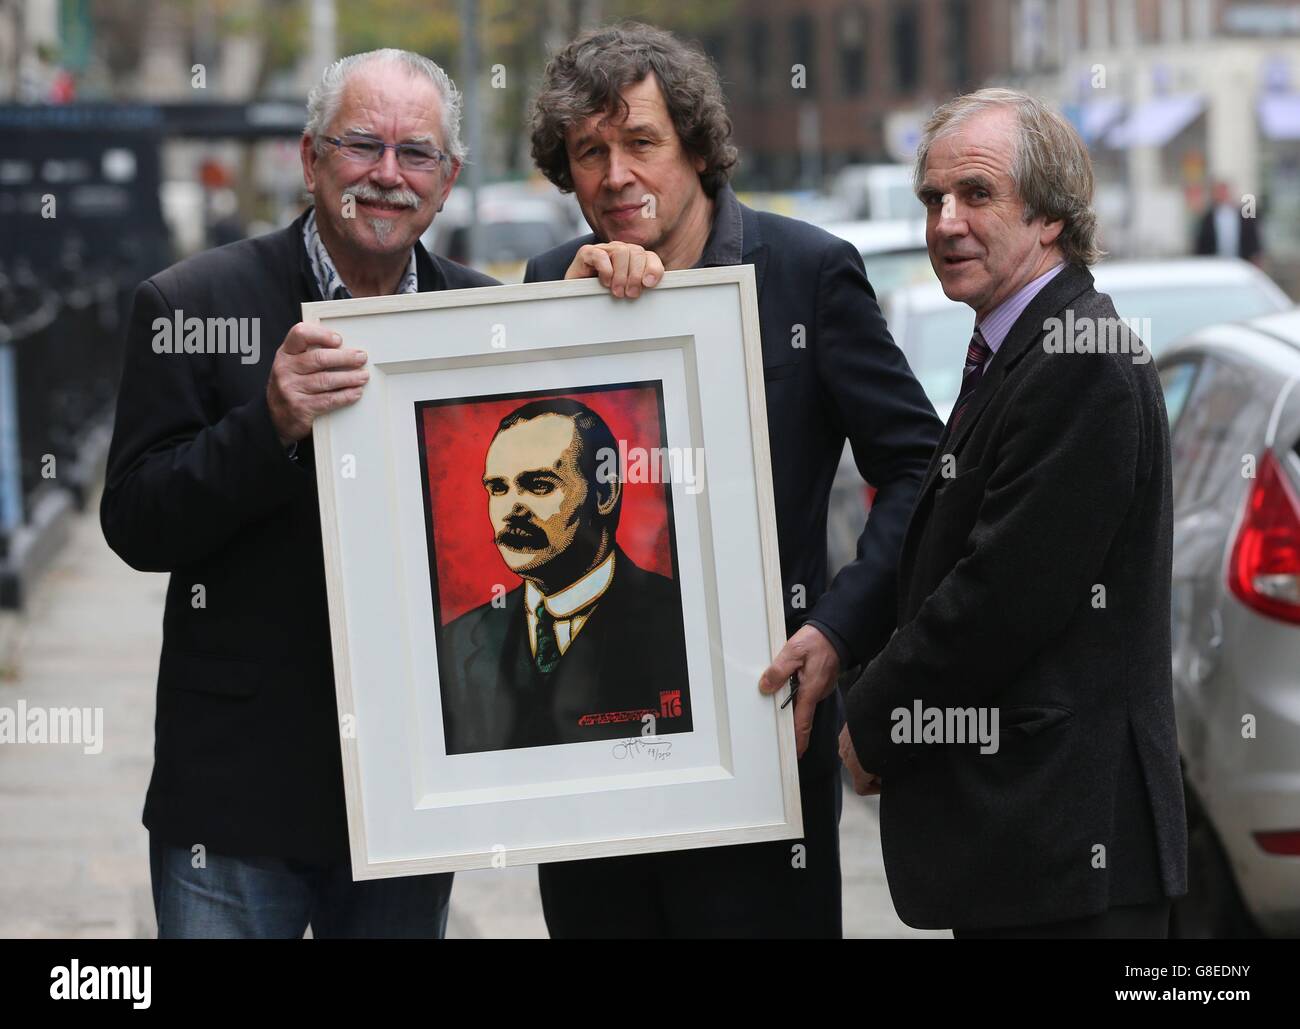 L'artiste Robert Ballagh (à gauche) présente l'un des acteurs les plus célèbres d'Irlande, Stephen Rea (au centre), avec une édition limitée de l'image de James Connolly de Jim Fitzpatrick, spécialement créée pour l'événement Requal the Vision of 1916 à Dublin cet après-midi. L'arrière-petit-fils de James Connolly, James Connelly Heron (à droite), est à l'affût. Banque D'Images